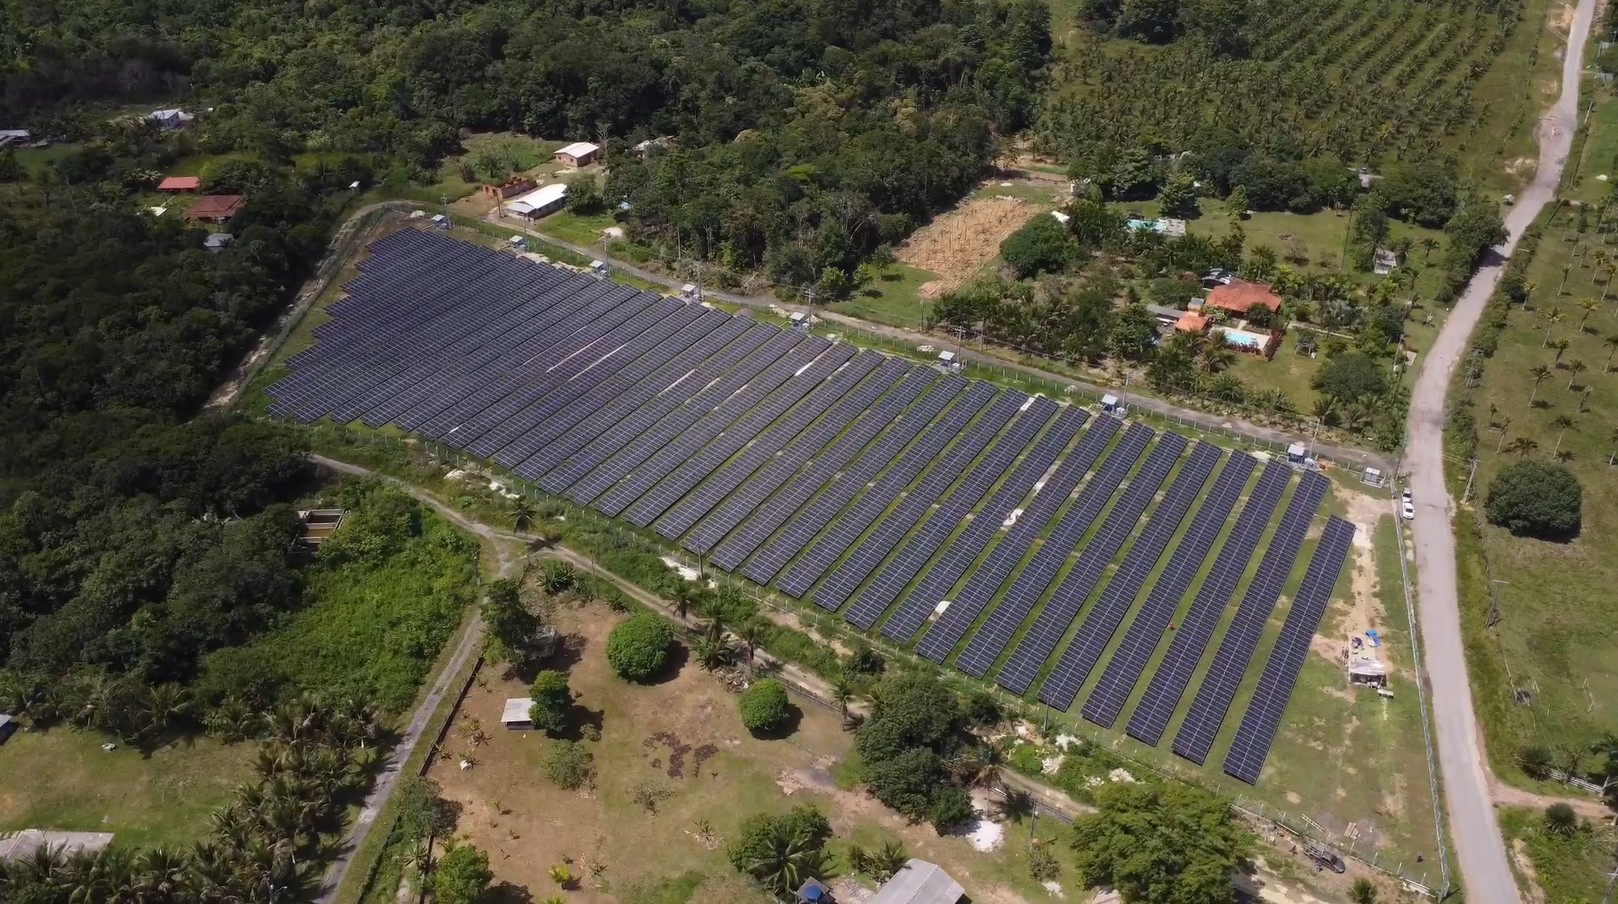 Maior usina de energia solar da região Norte do país é inaugurada. Complexo vai produzir energia limpa para unidades do serviço de água